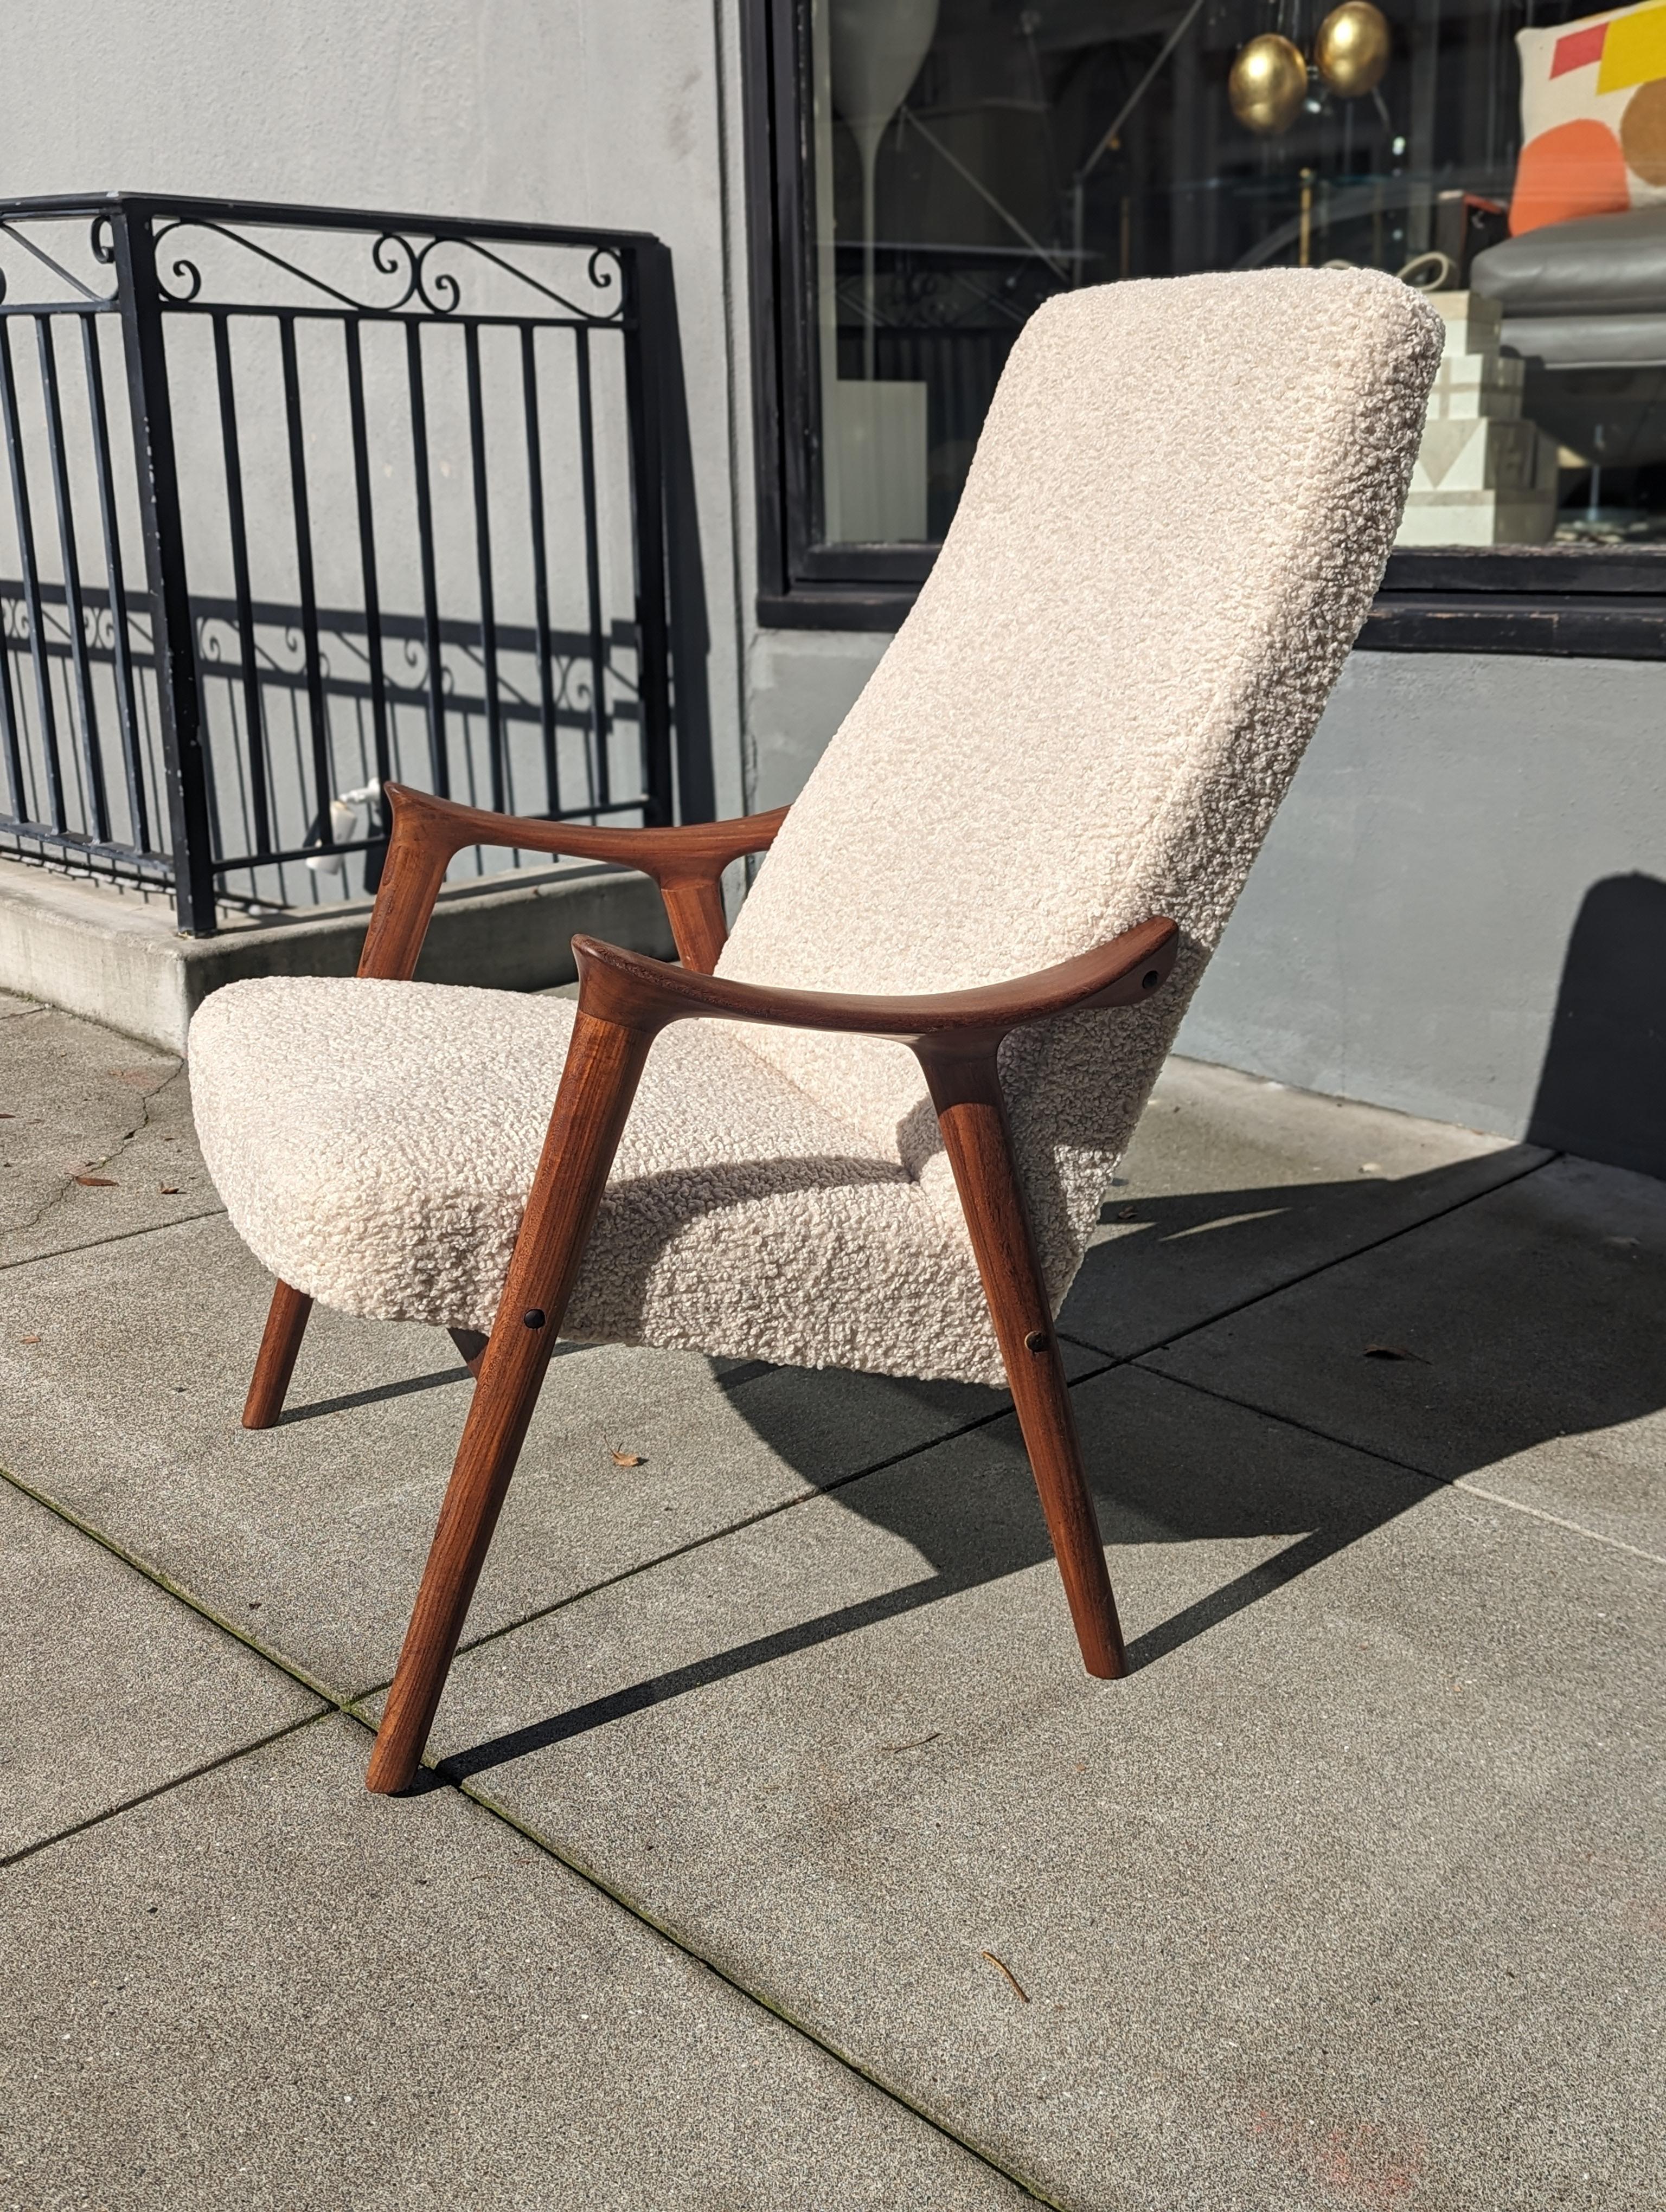 Oubliez les canapés rigides et les chaises à l'emporte-pièce ! Cette chaise longue Up&Up des années 1970 est une invitation à se lover et à adopter l'emblématique scoop, le style scandinave. Imaginez le grain gorgé de soleil des accoudoirs en teck